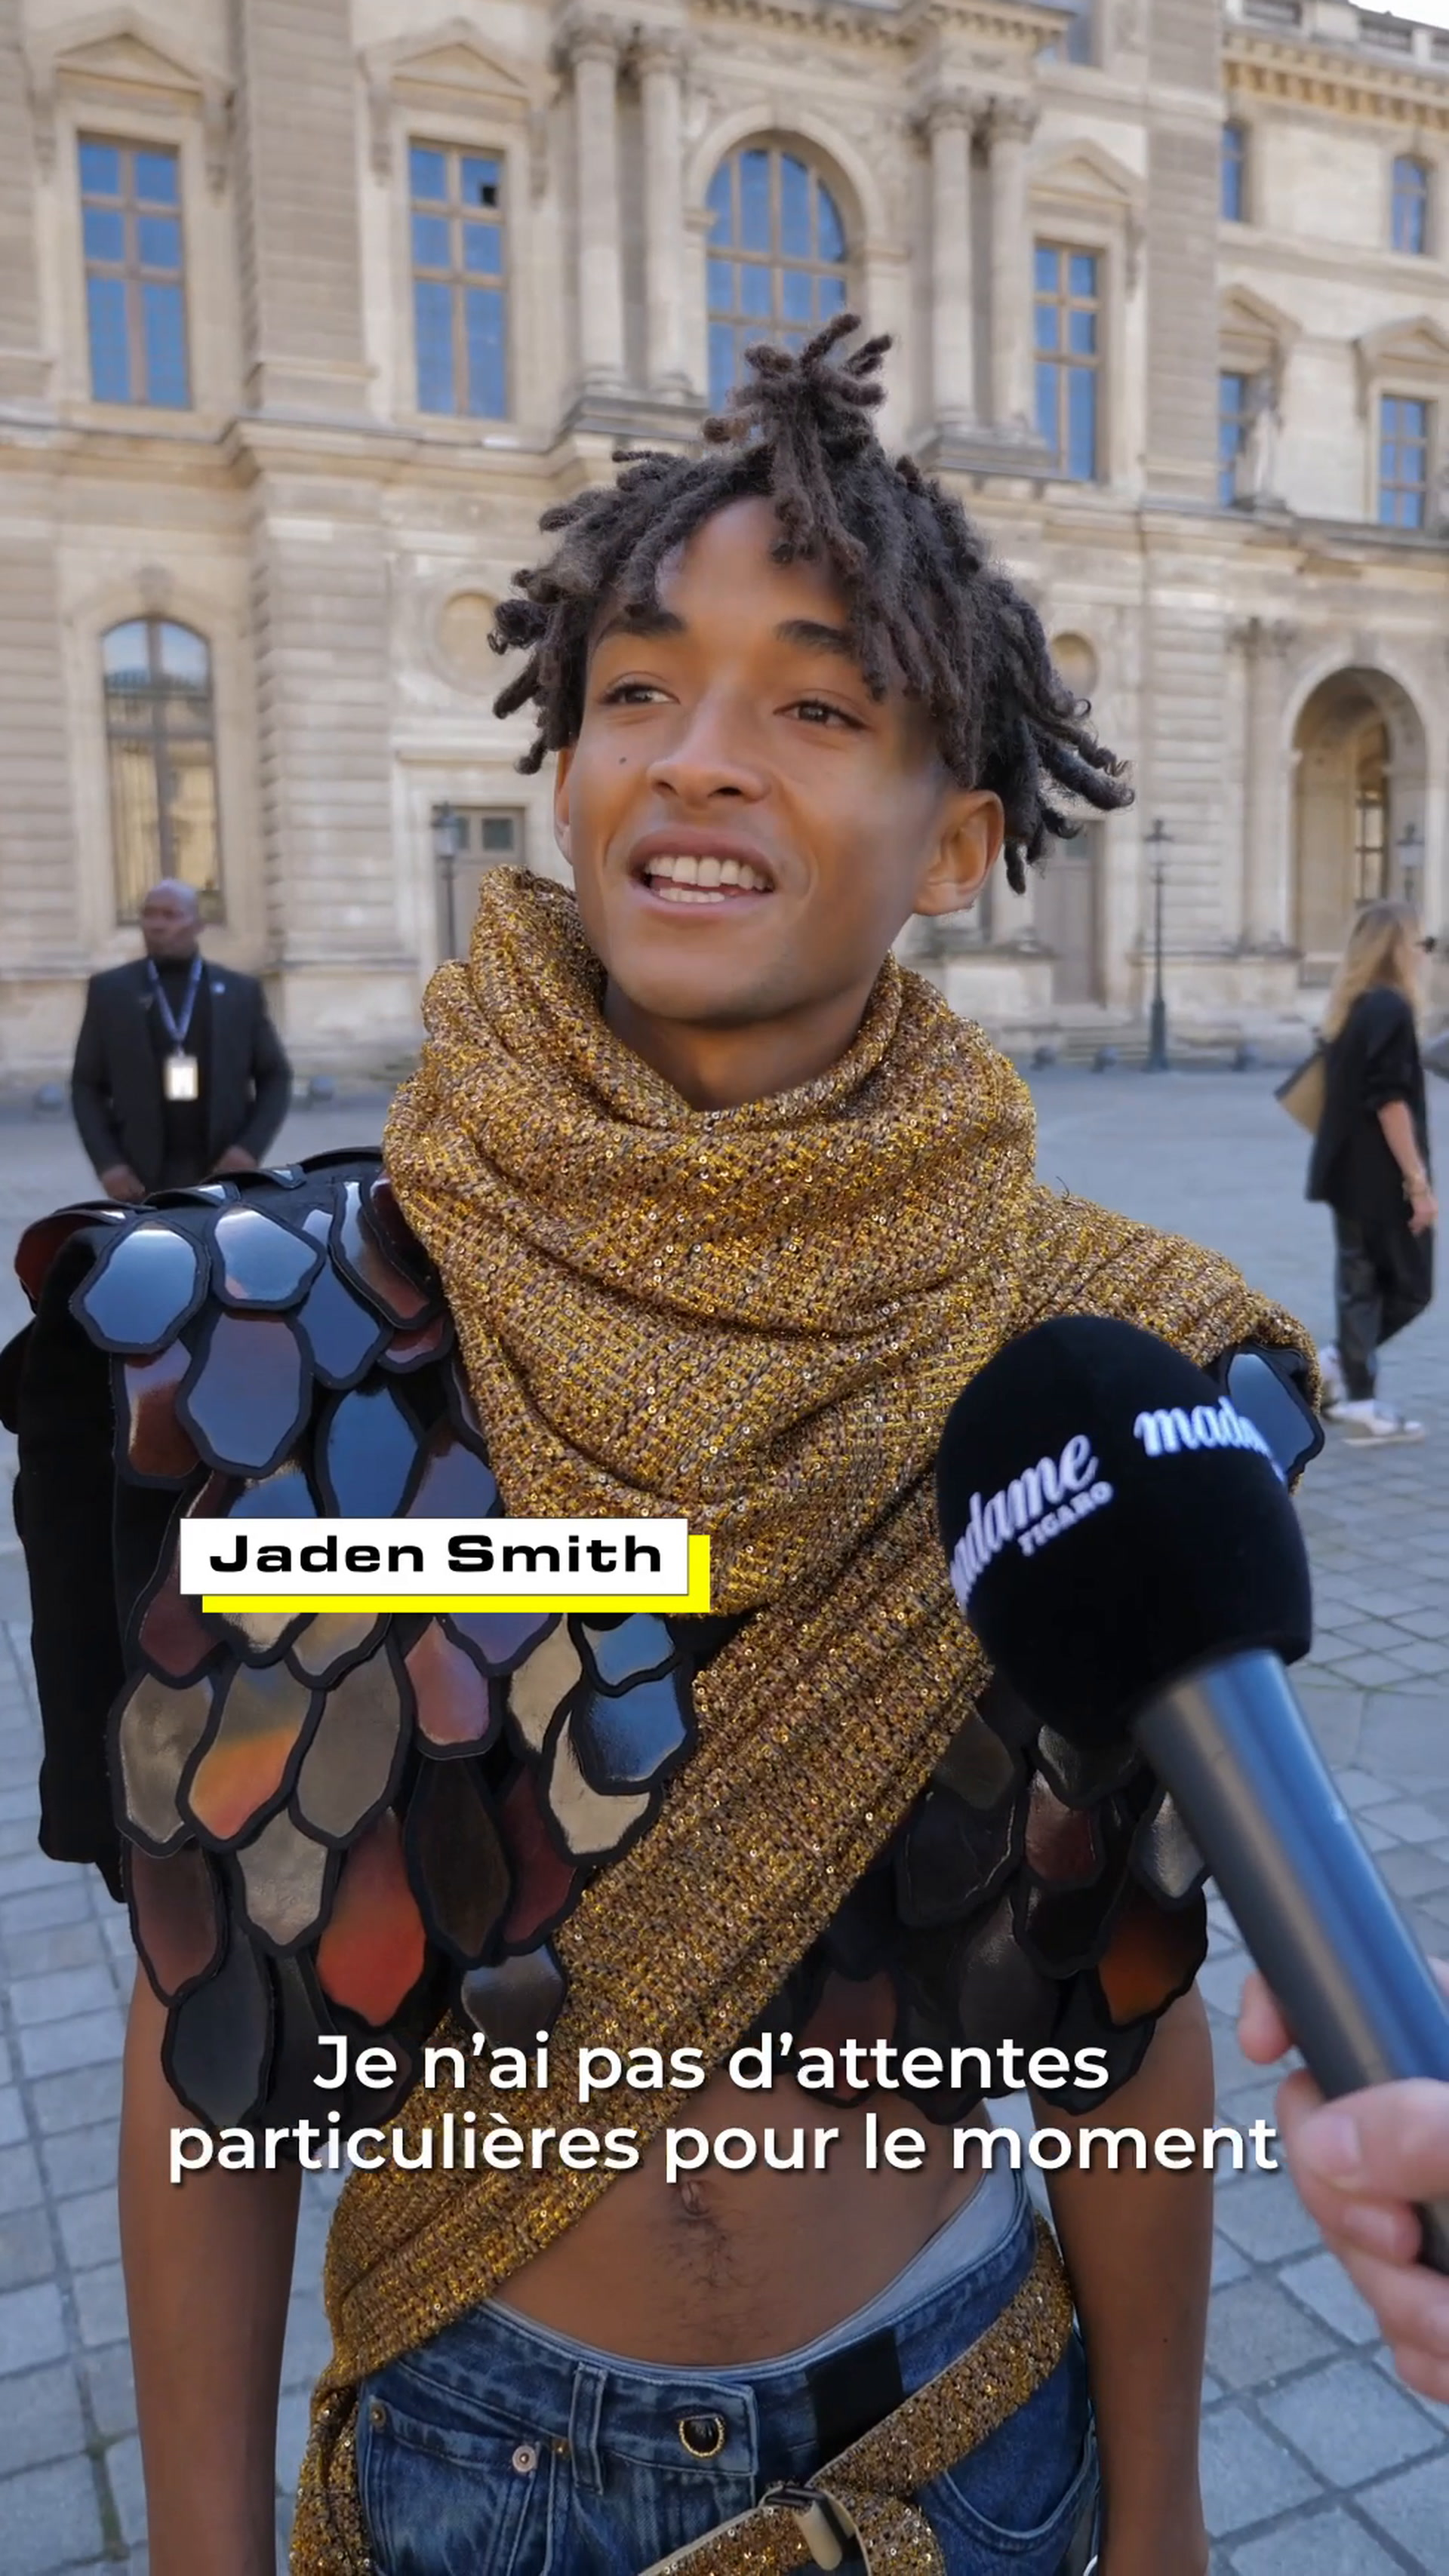 The Iconics : le sac Dauphine de Louis Vuitton - Vidéo Dailymotion